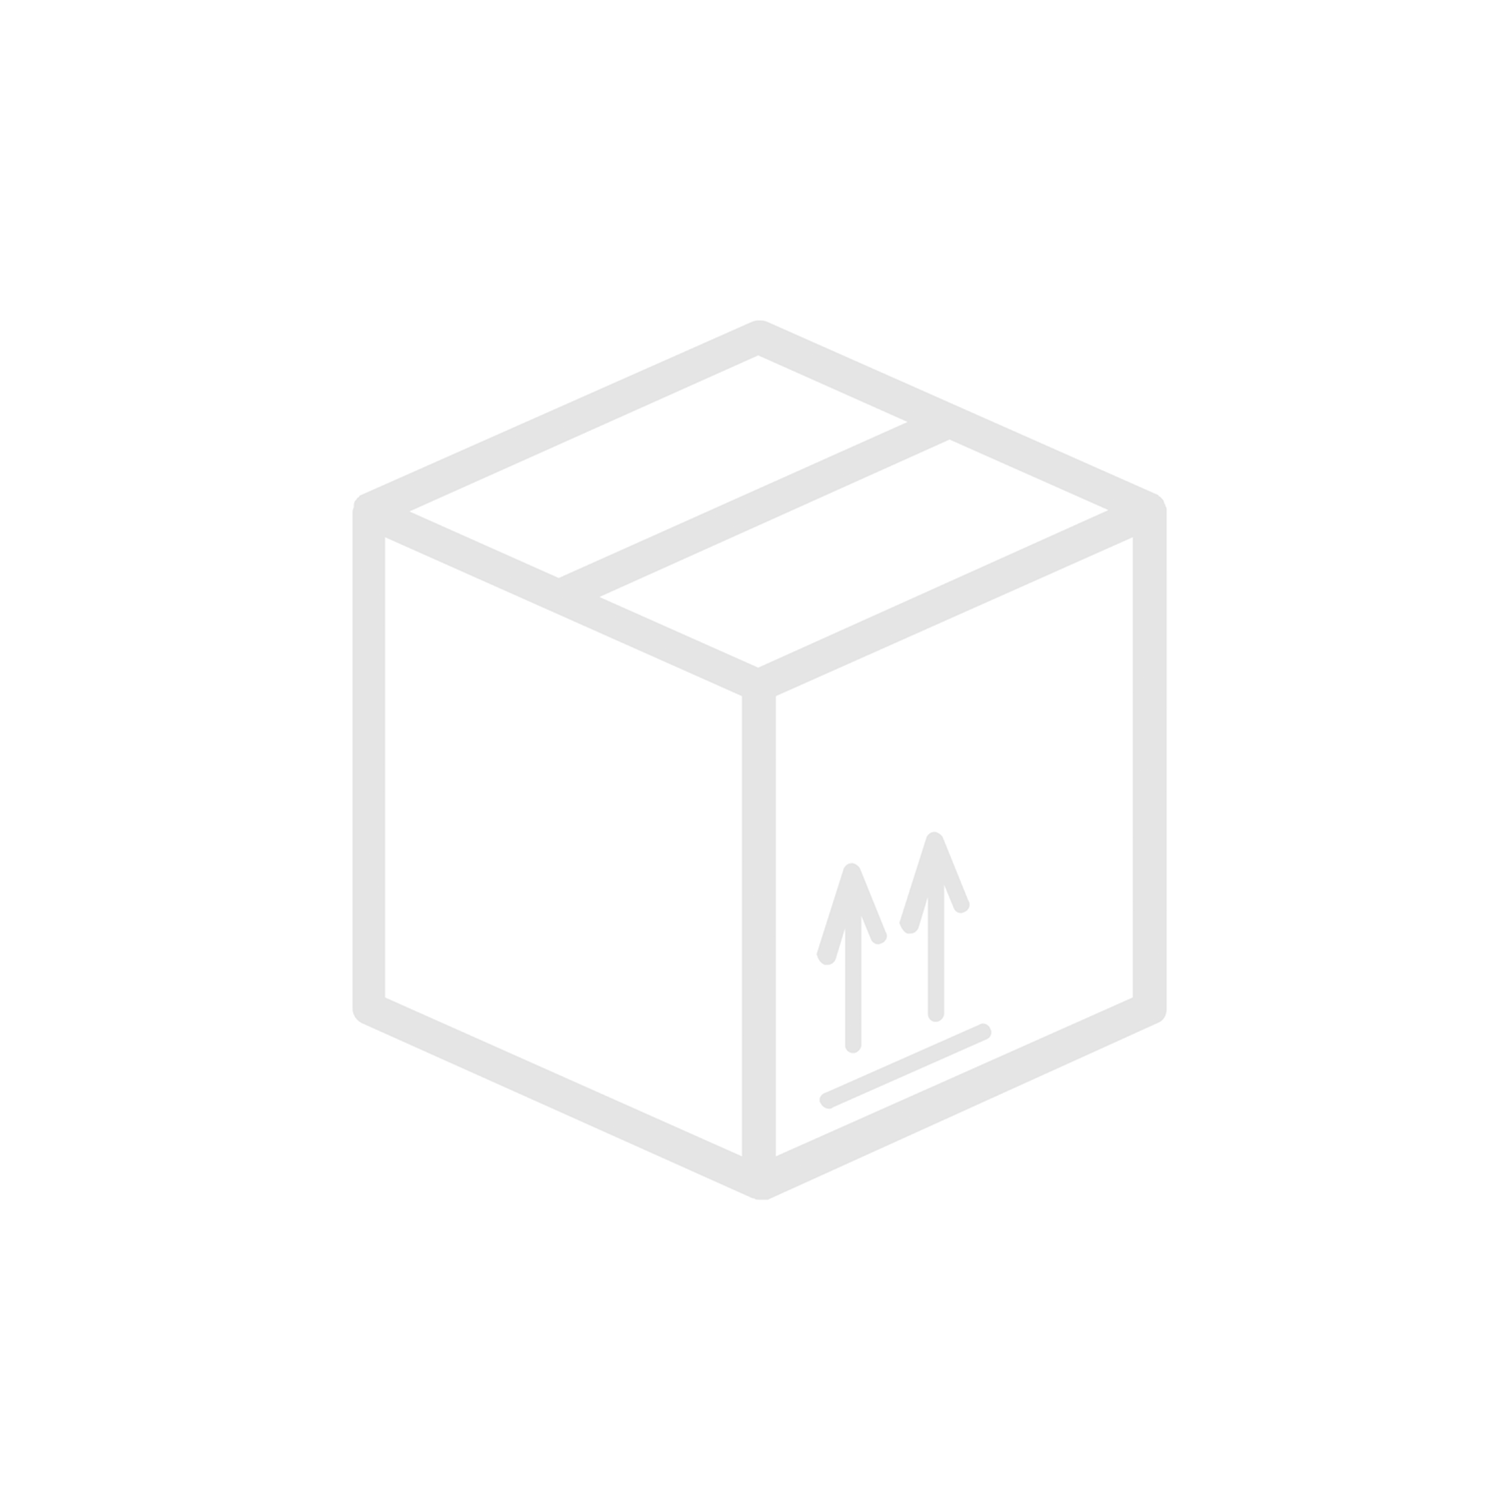 Sexkantbult för täckplatta M6S Rörklammer Tunga Serien